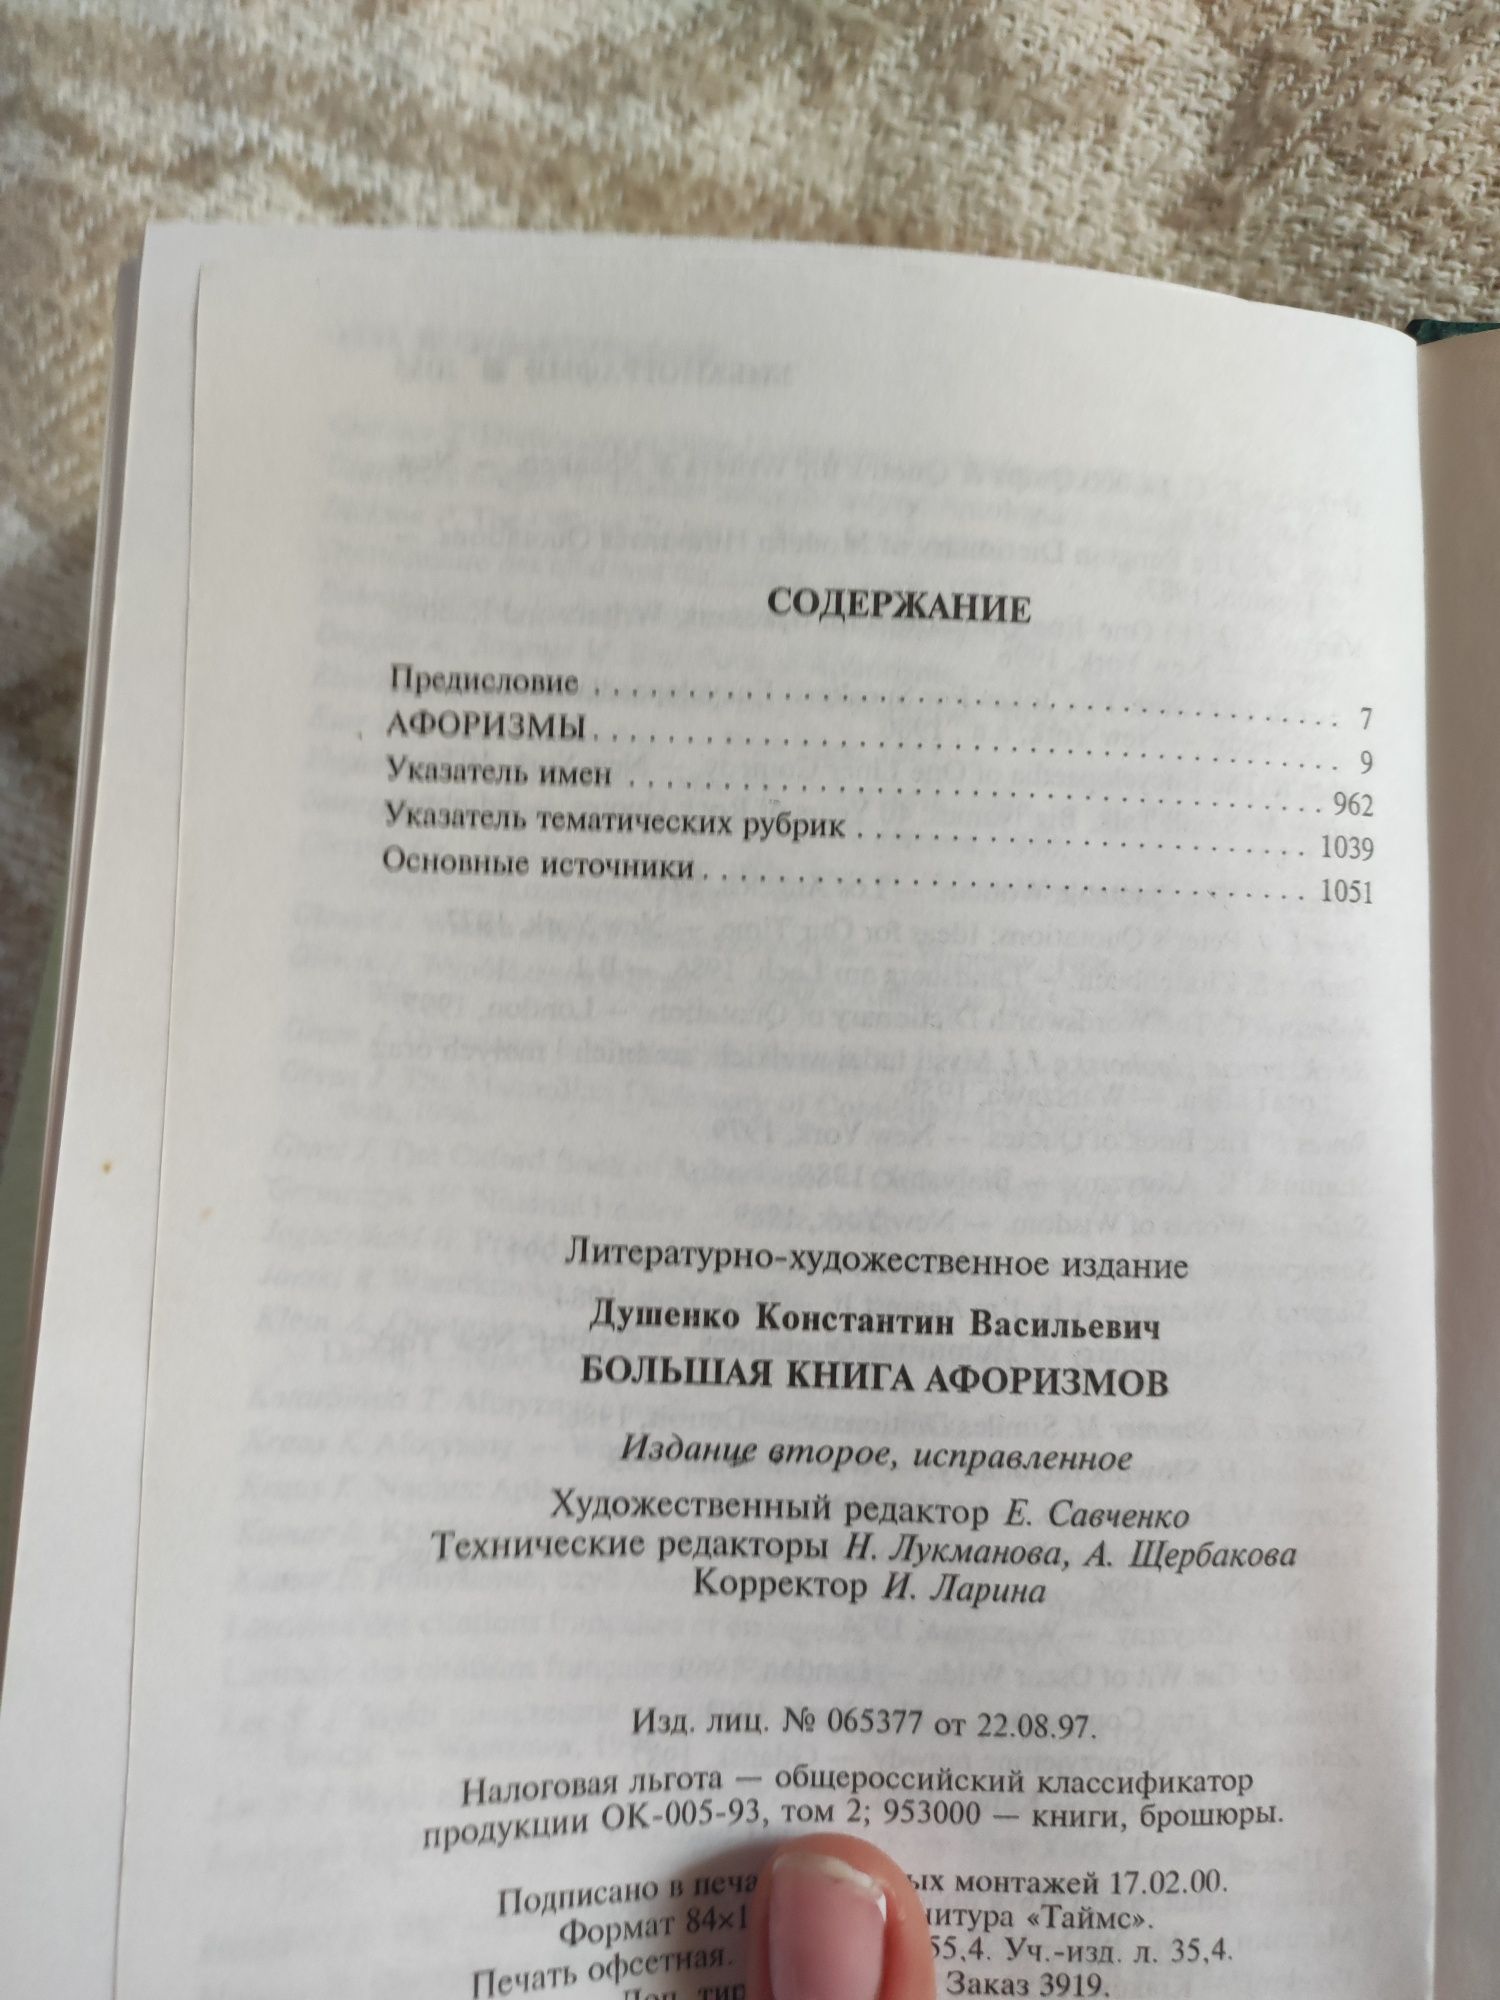 Велика книга афоризмів російською